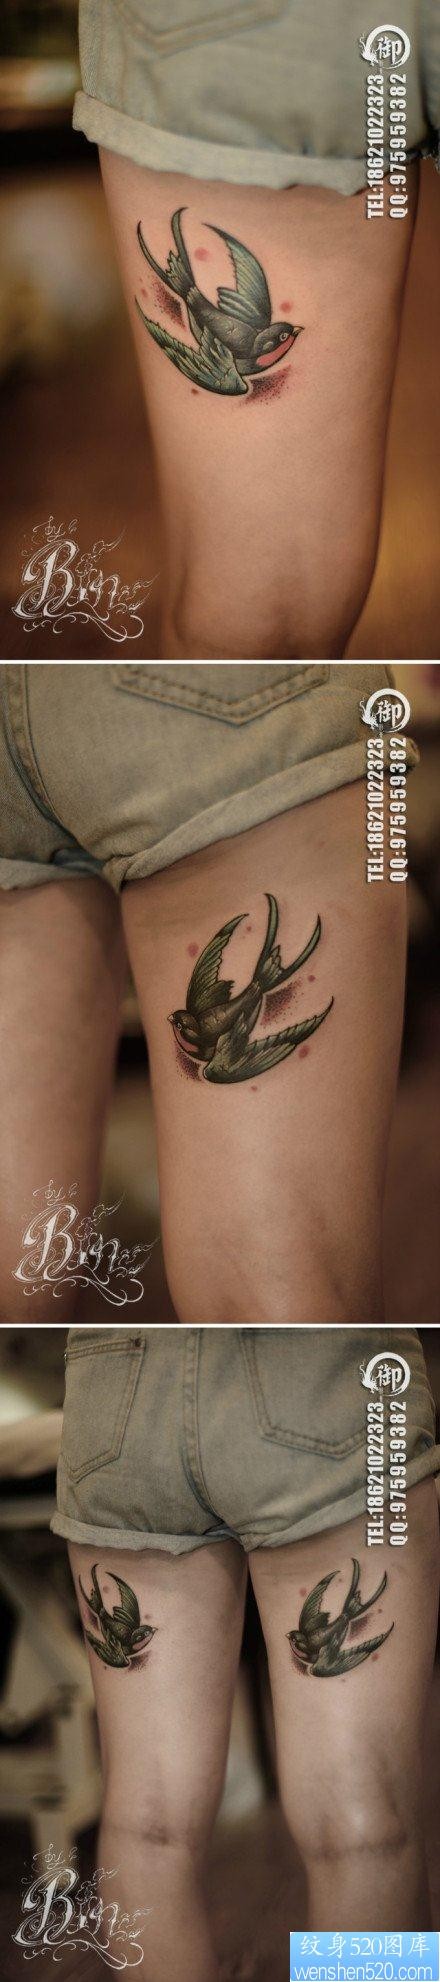 女孩子腿部潮流时尚的小燕子纹身图片